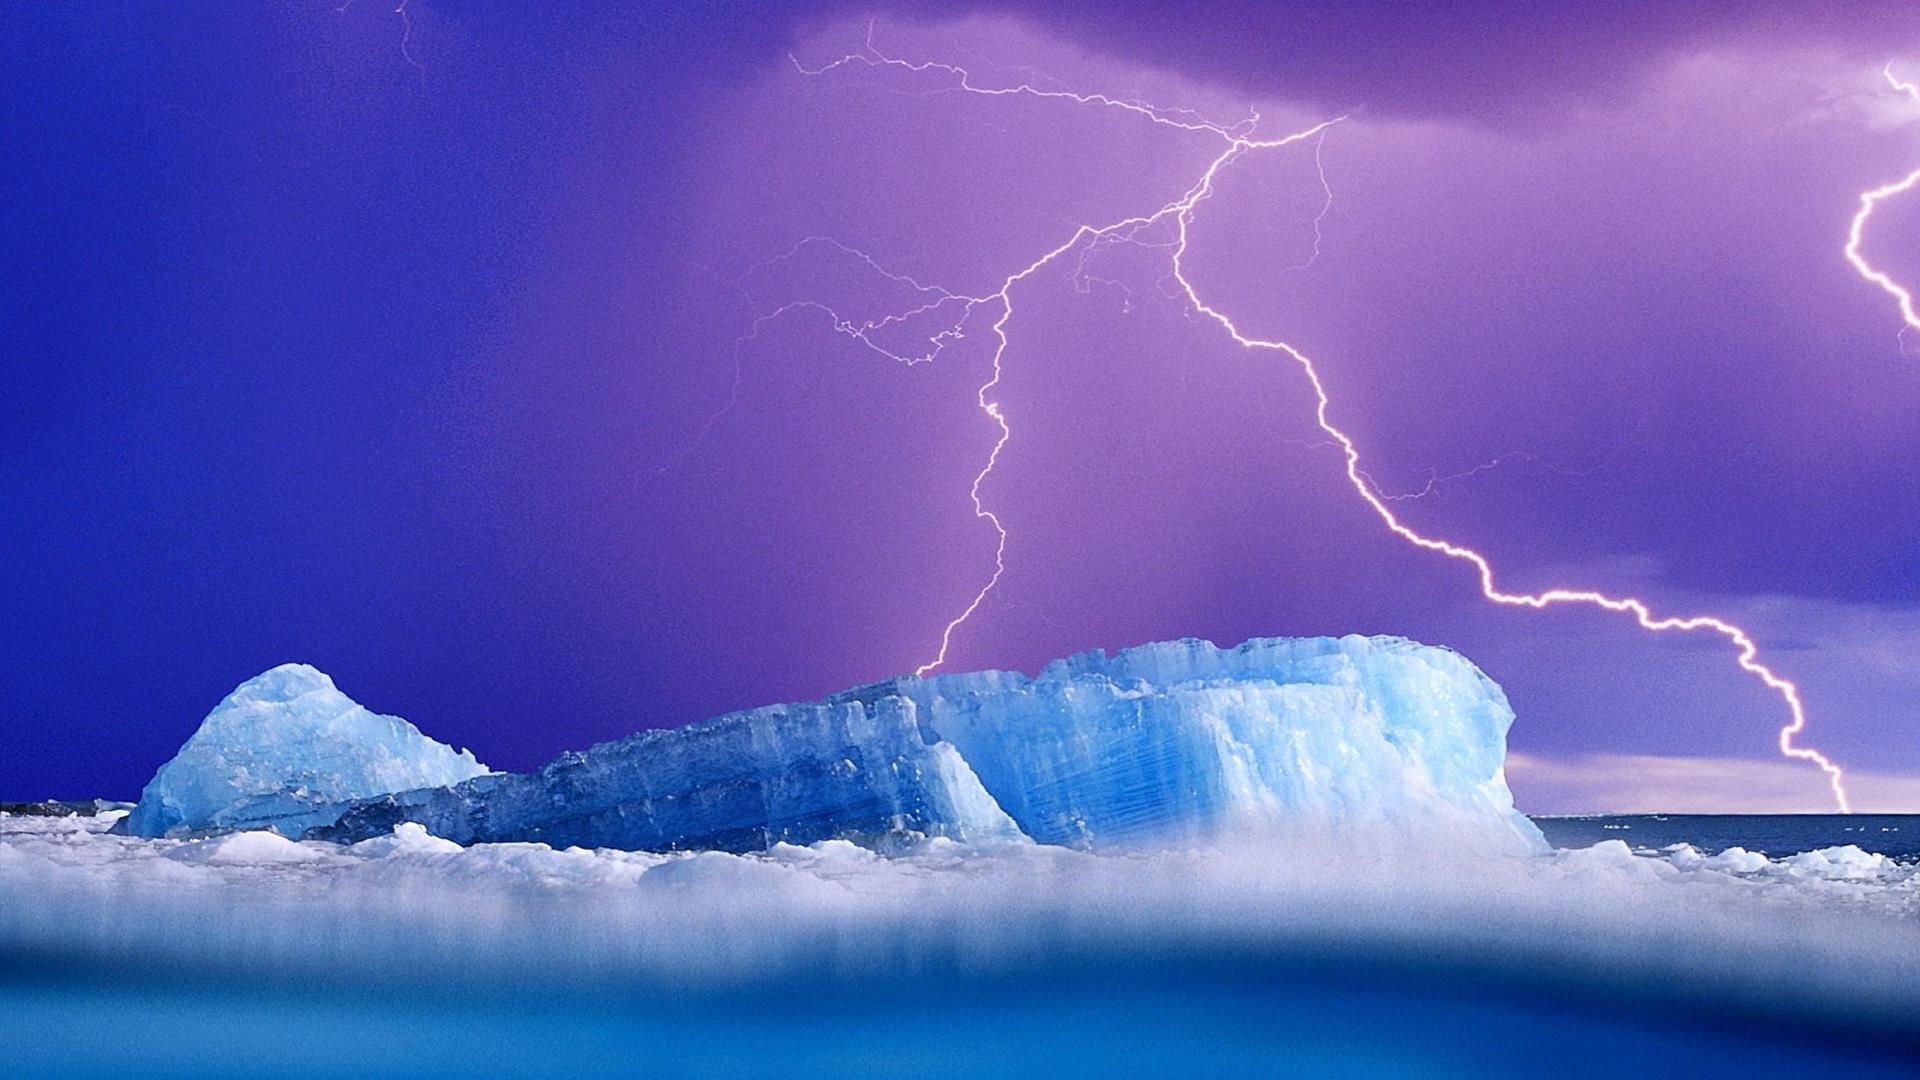 Iceberg under lightning scenic free desktop background